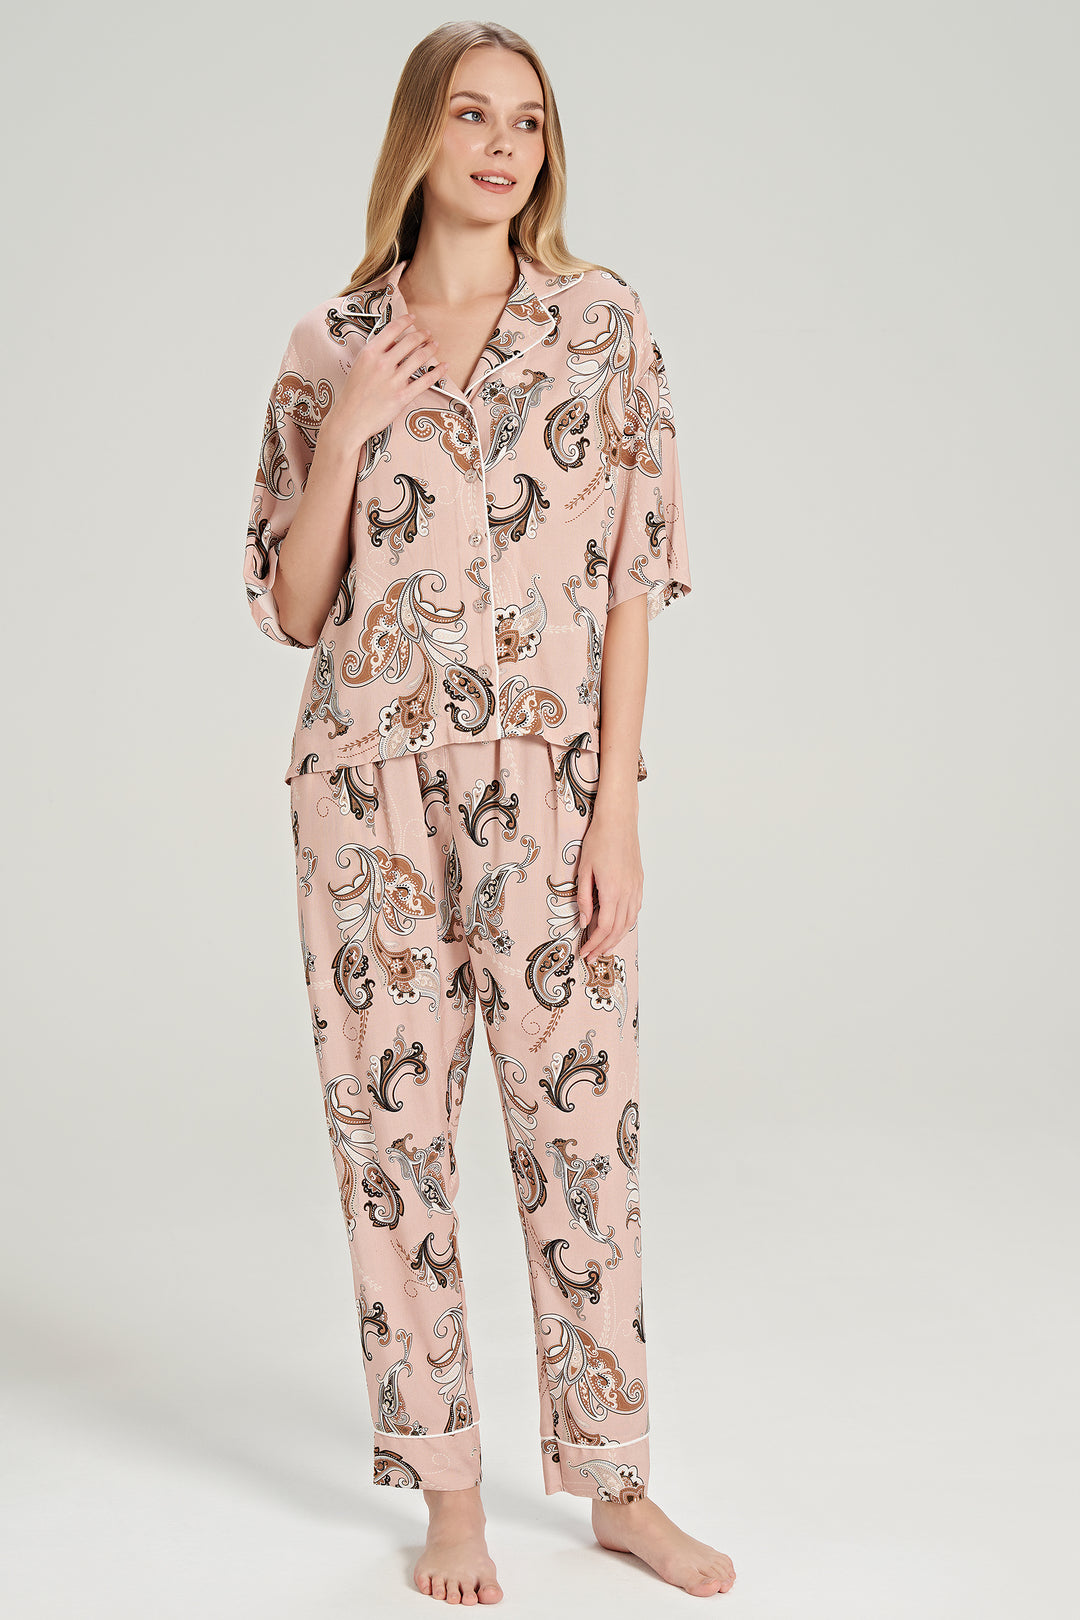 Shawl Patterned Button-Up Pajama Set